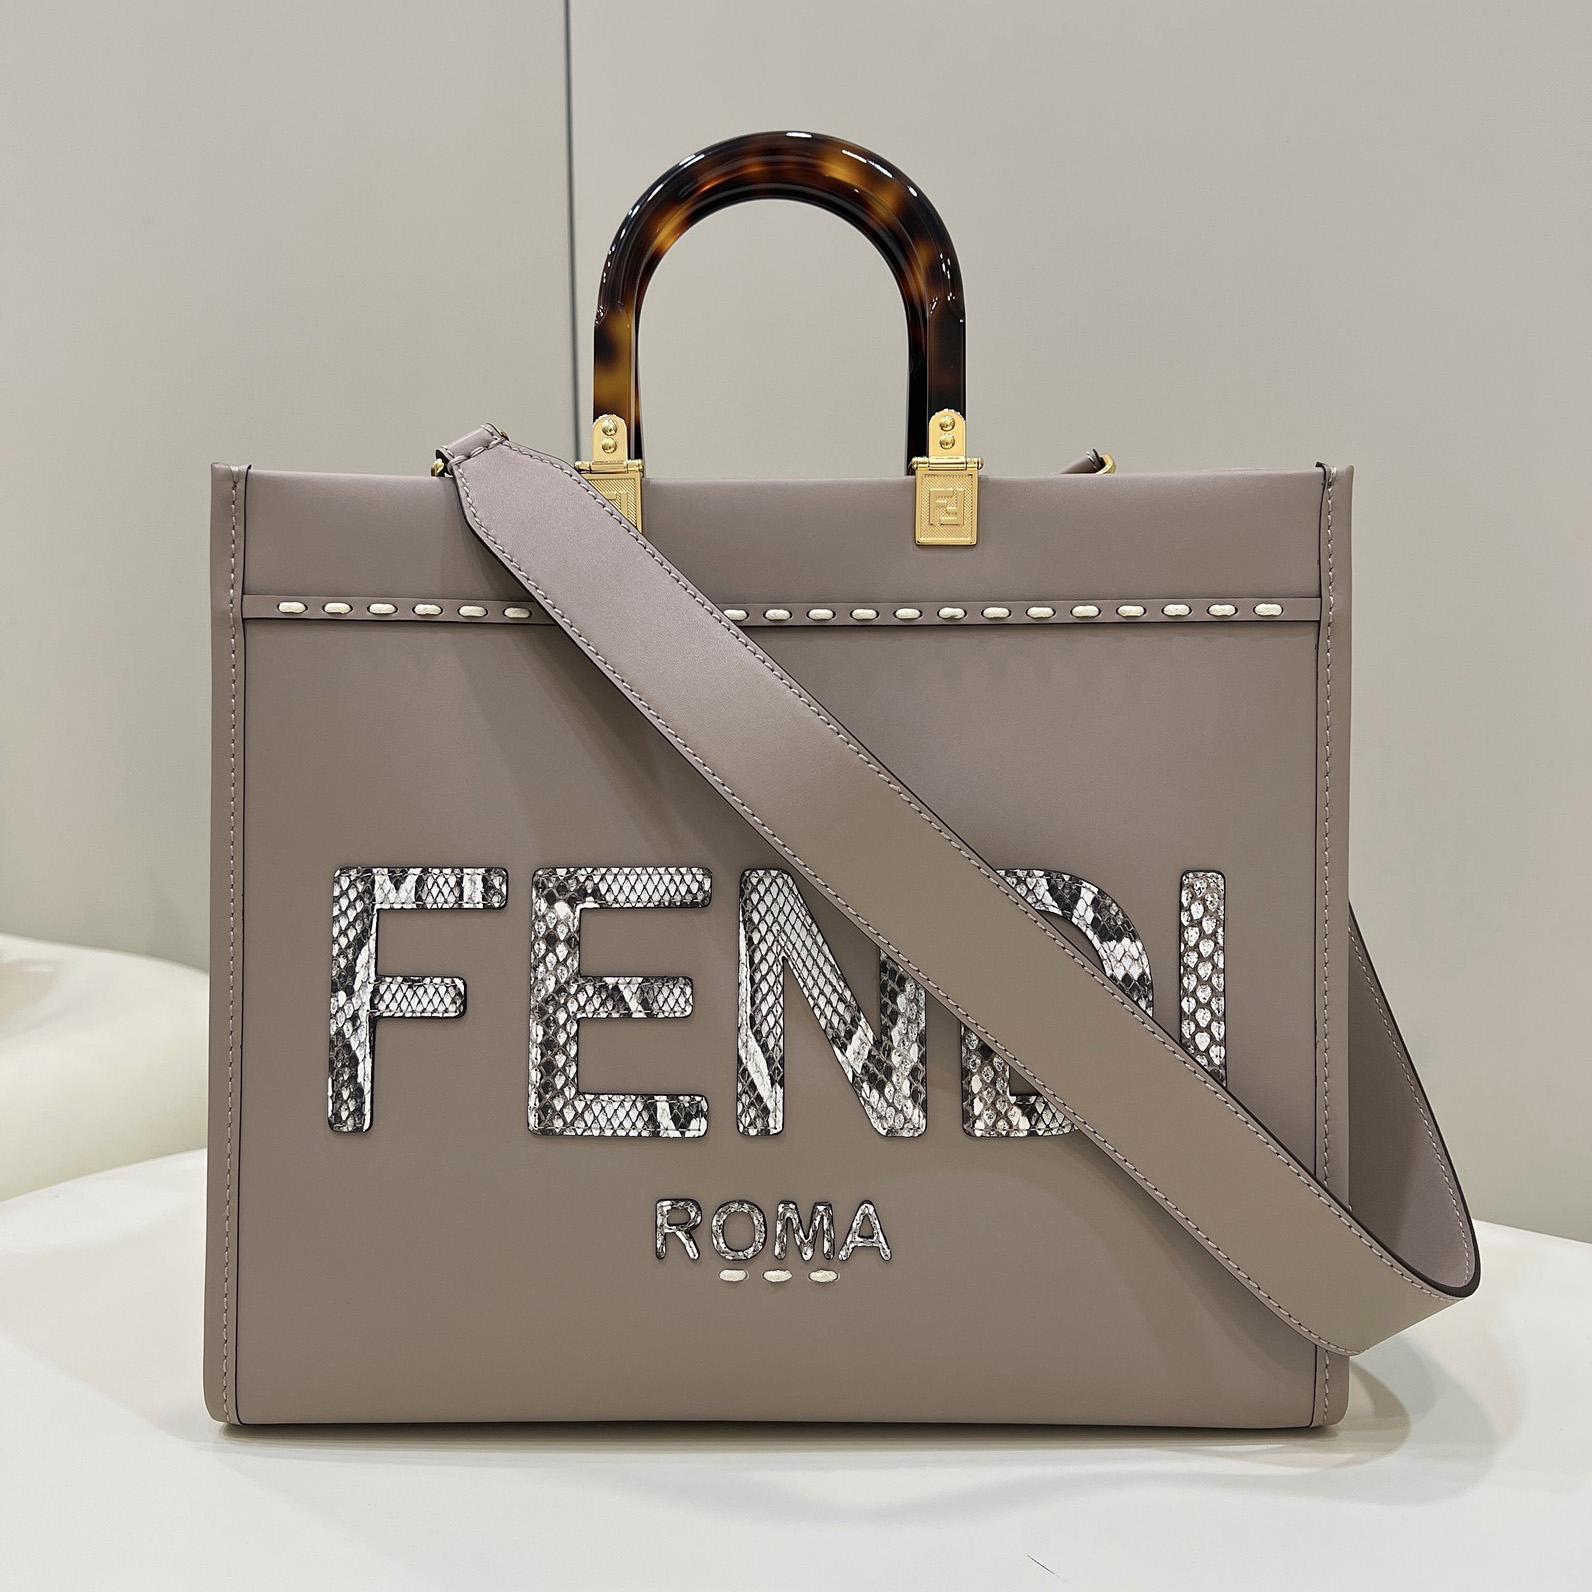 Fendi Sunshine Medium Beige Leather And Elaphe Shopper - DesignerGu